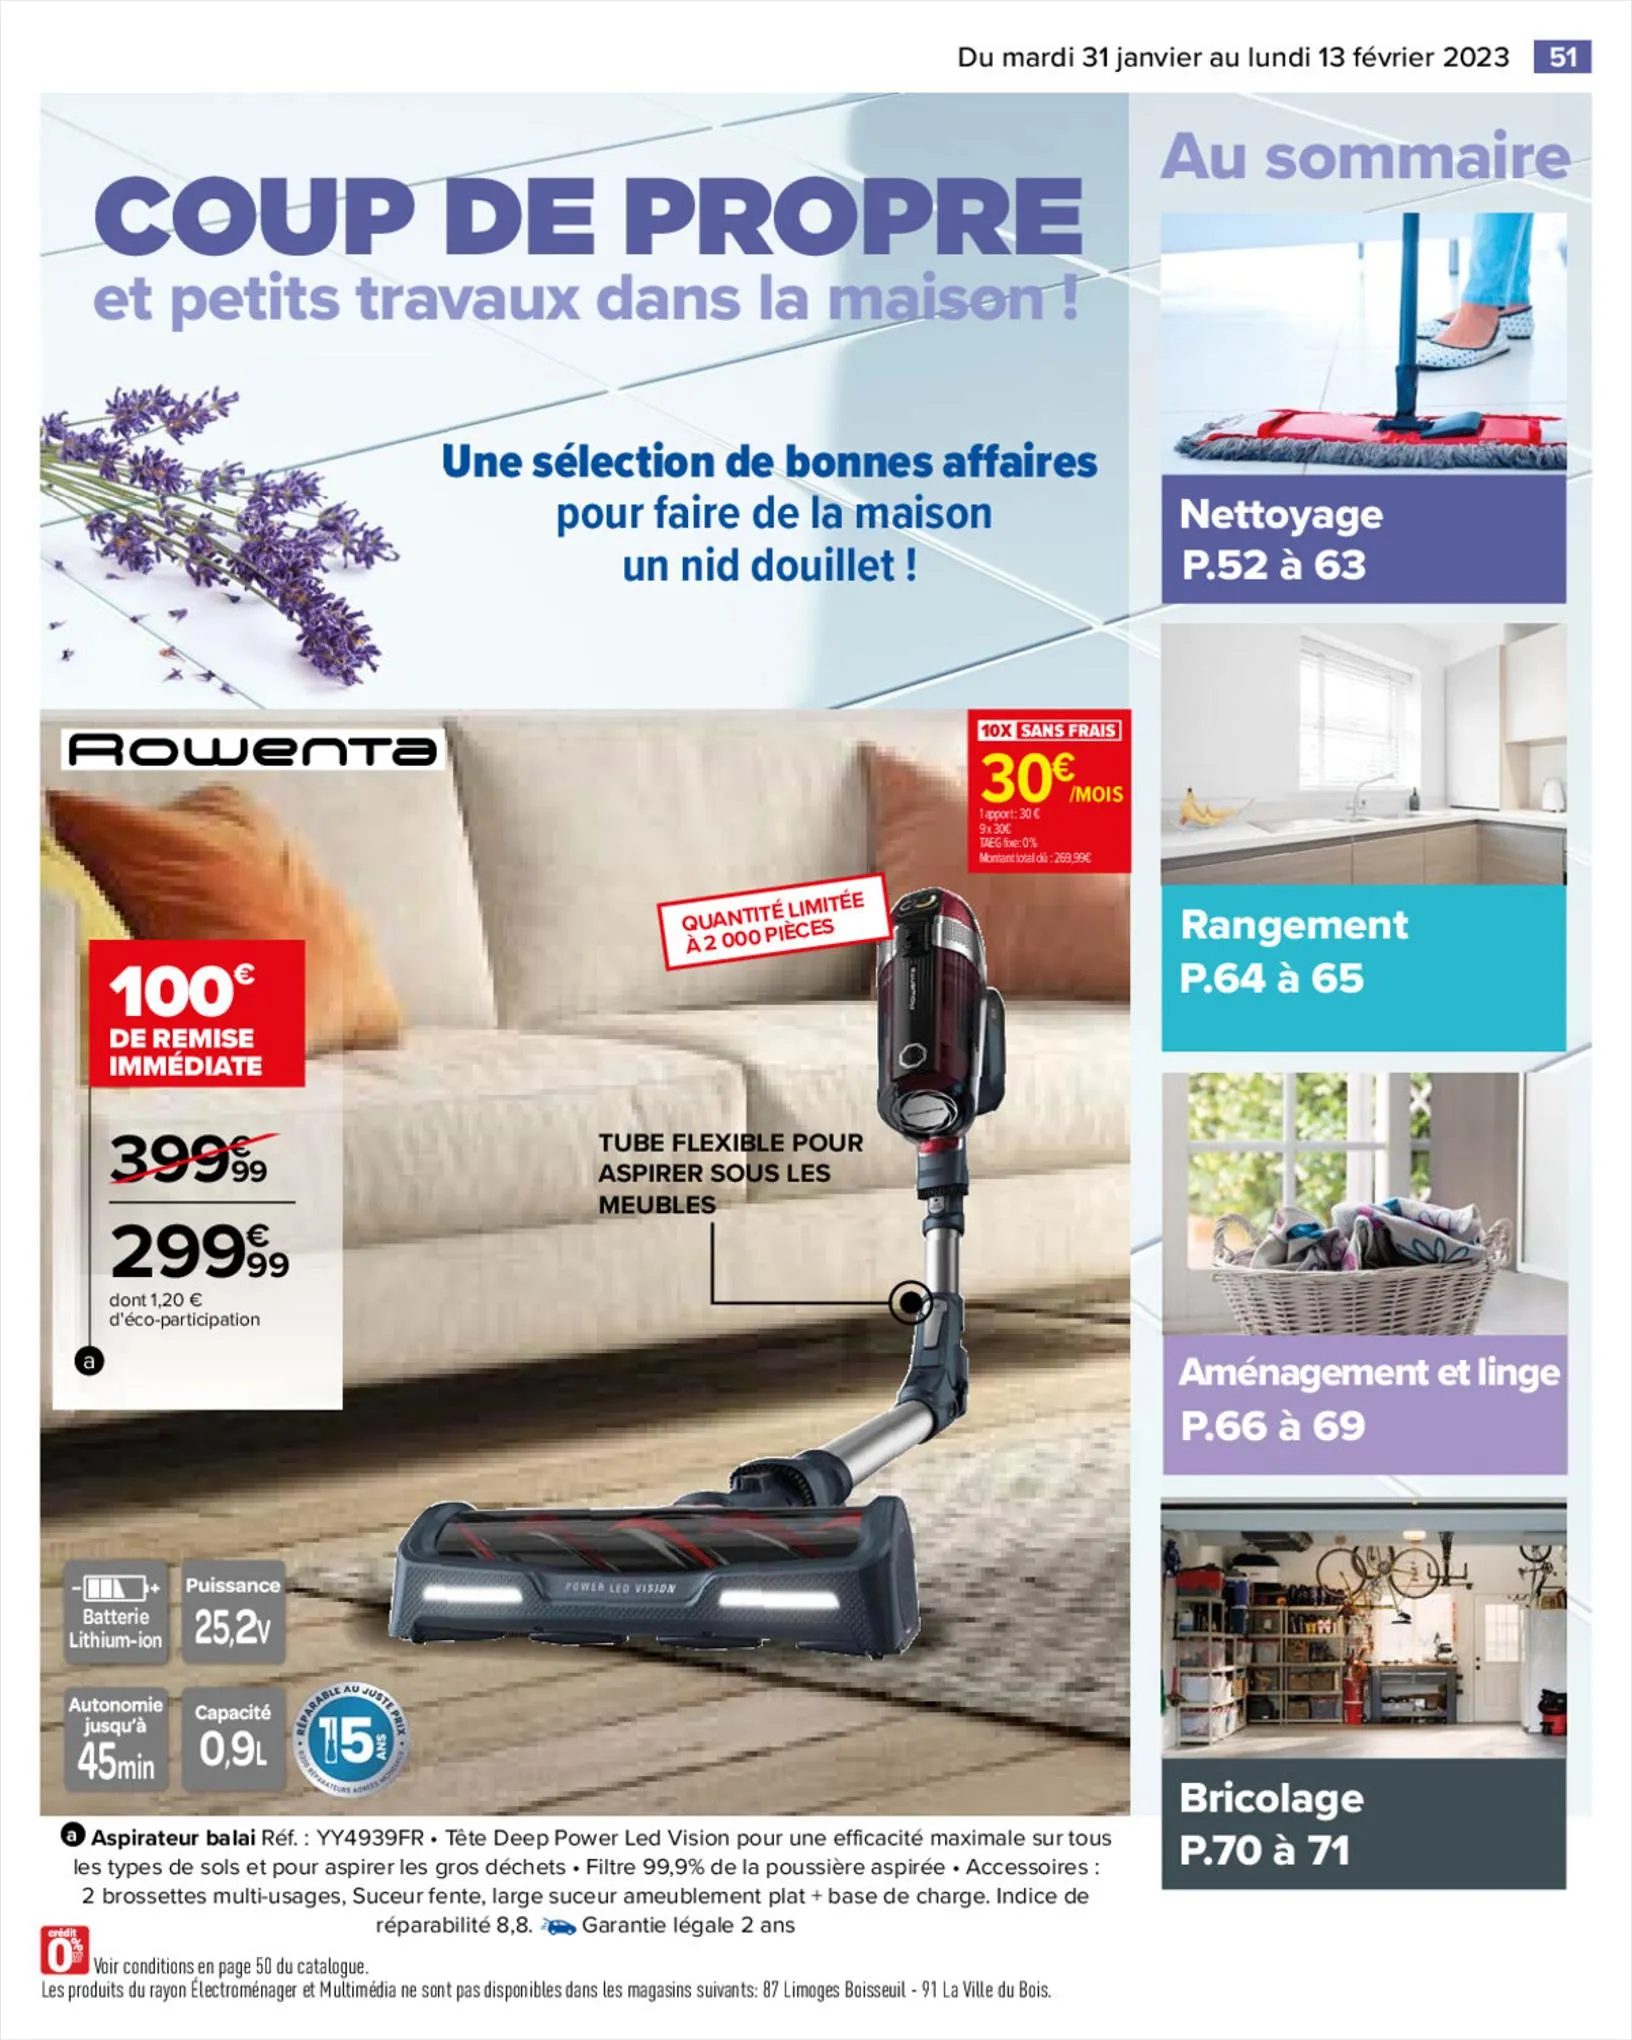 Catalogue COUP DE PROPRE dans la maison !, page 00055